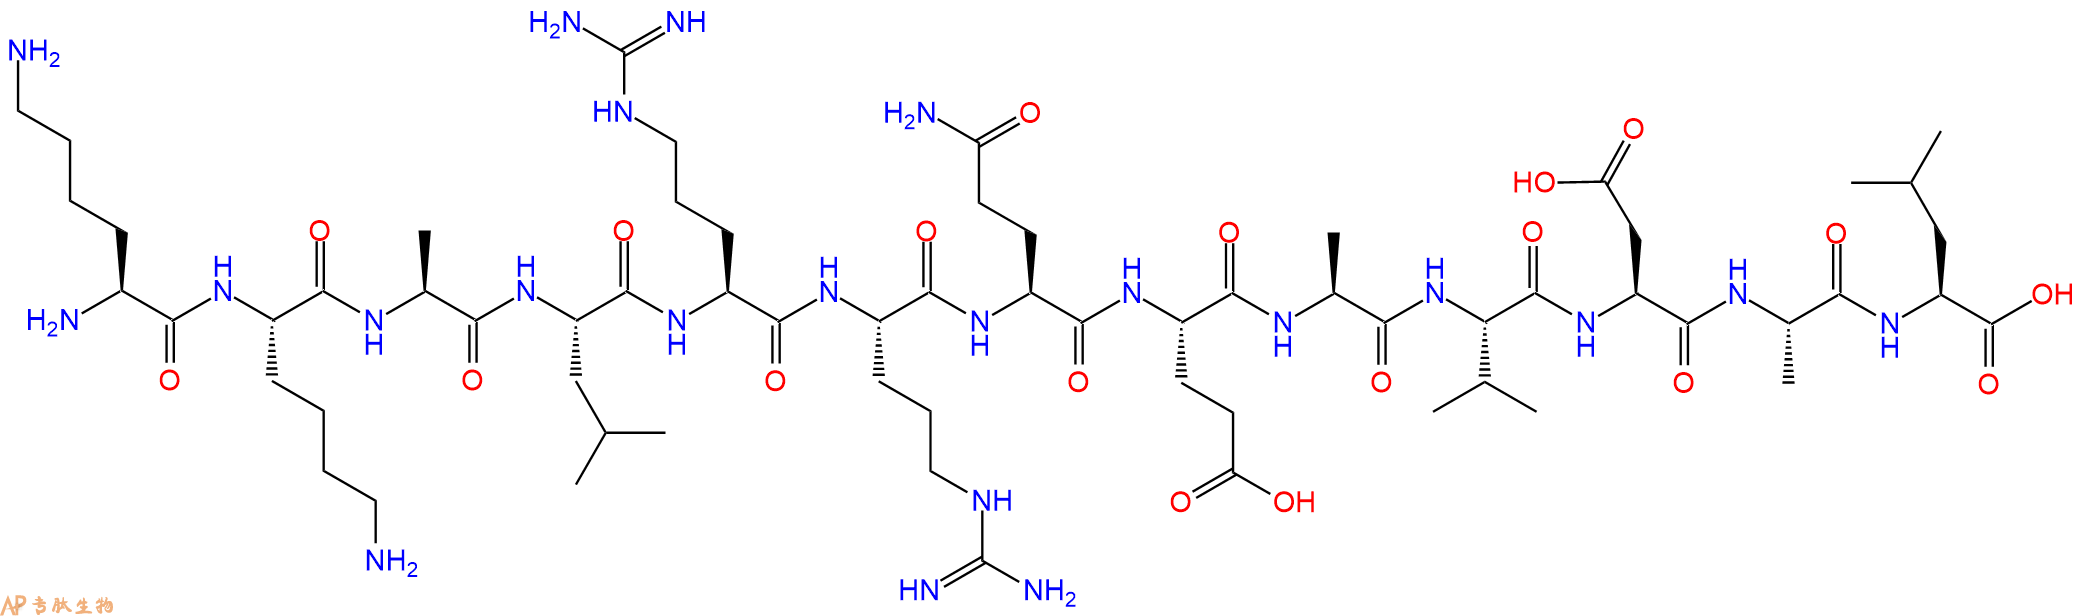 专肽生物产品钙调蛋白激酶底物[Ala9]Autocamtide 2167114-91-2